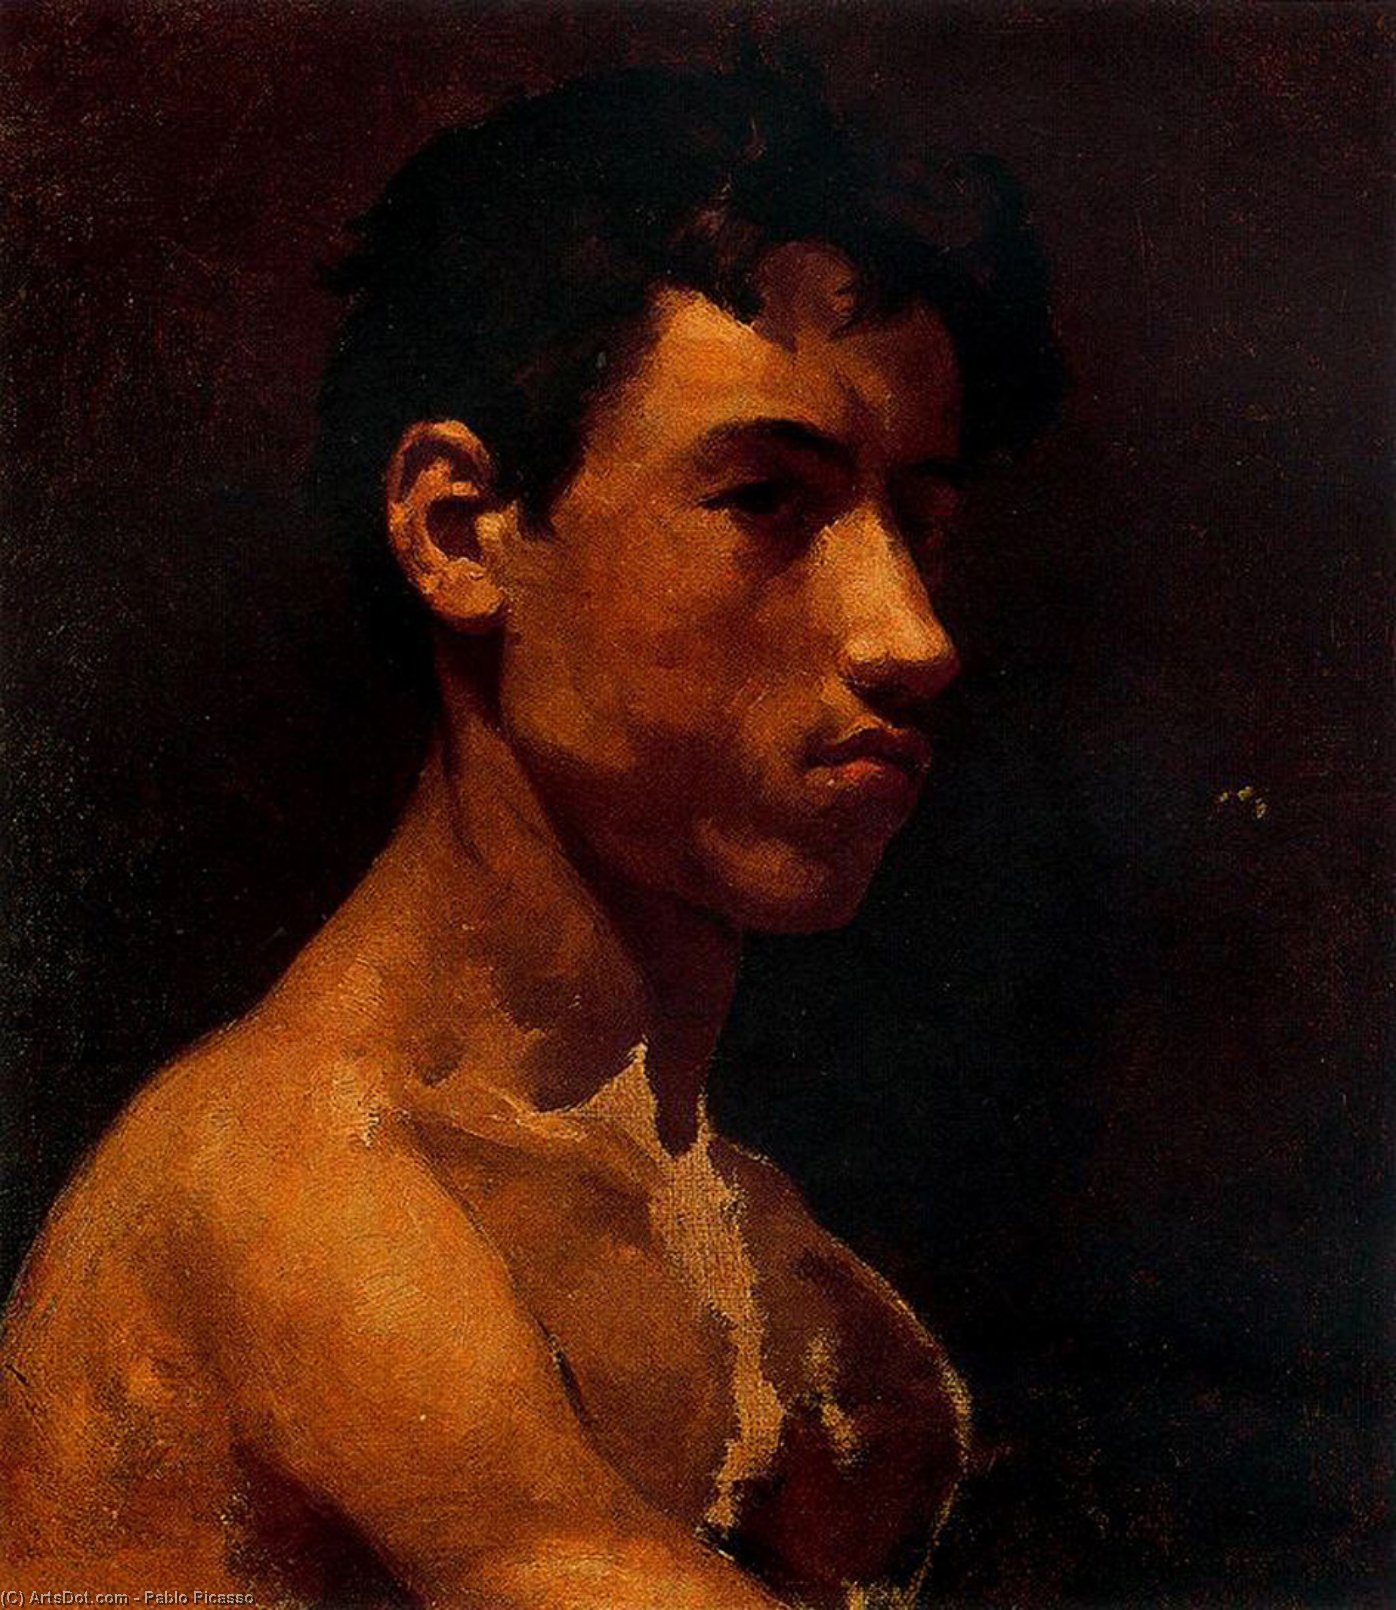 WikiOO.org - Enciclopédia das Belas Artes - Pintura, Arte por Pablo Picasso - Bust of young man